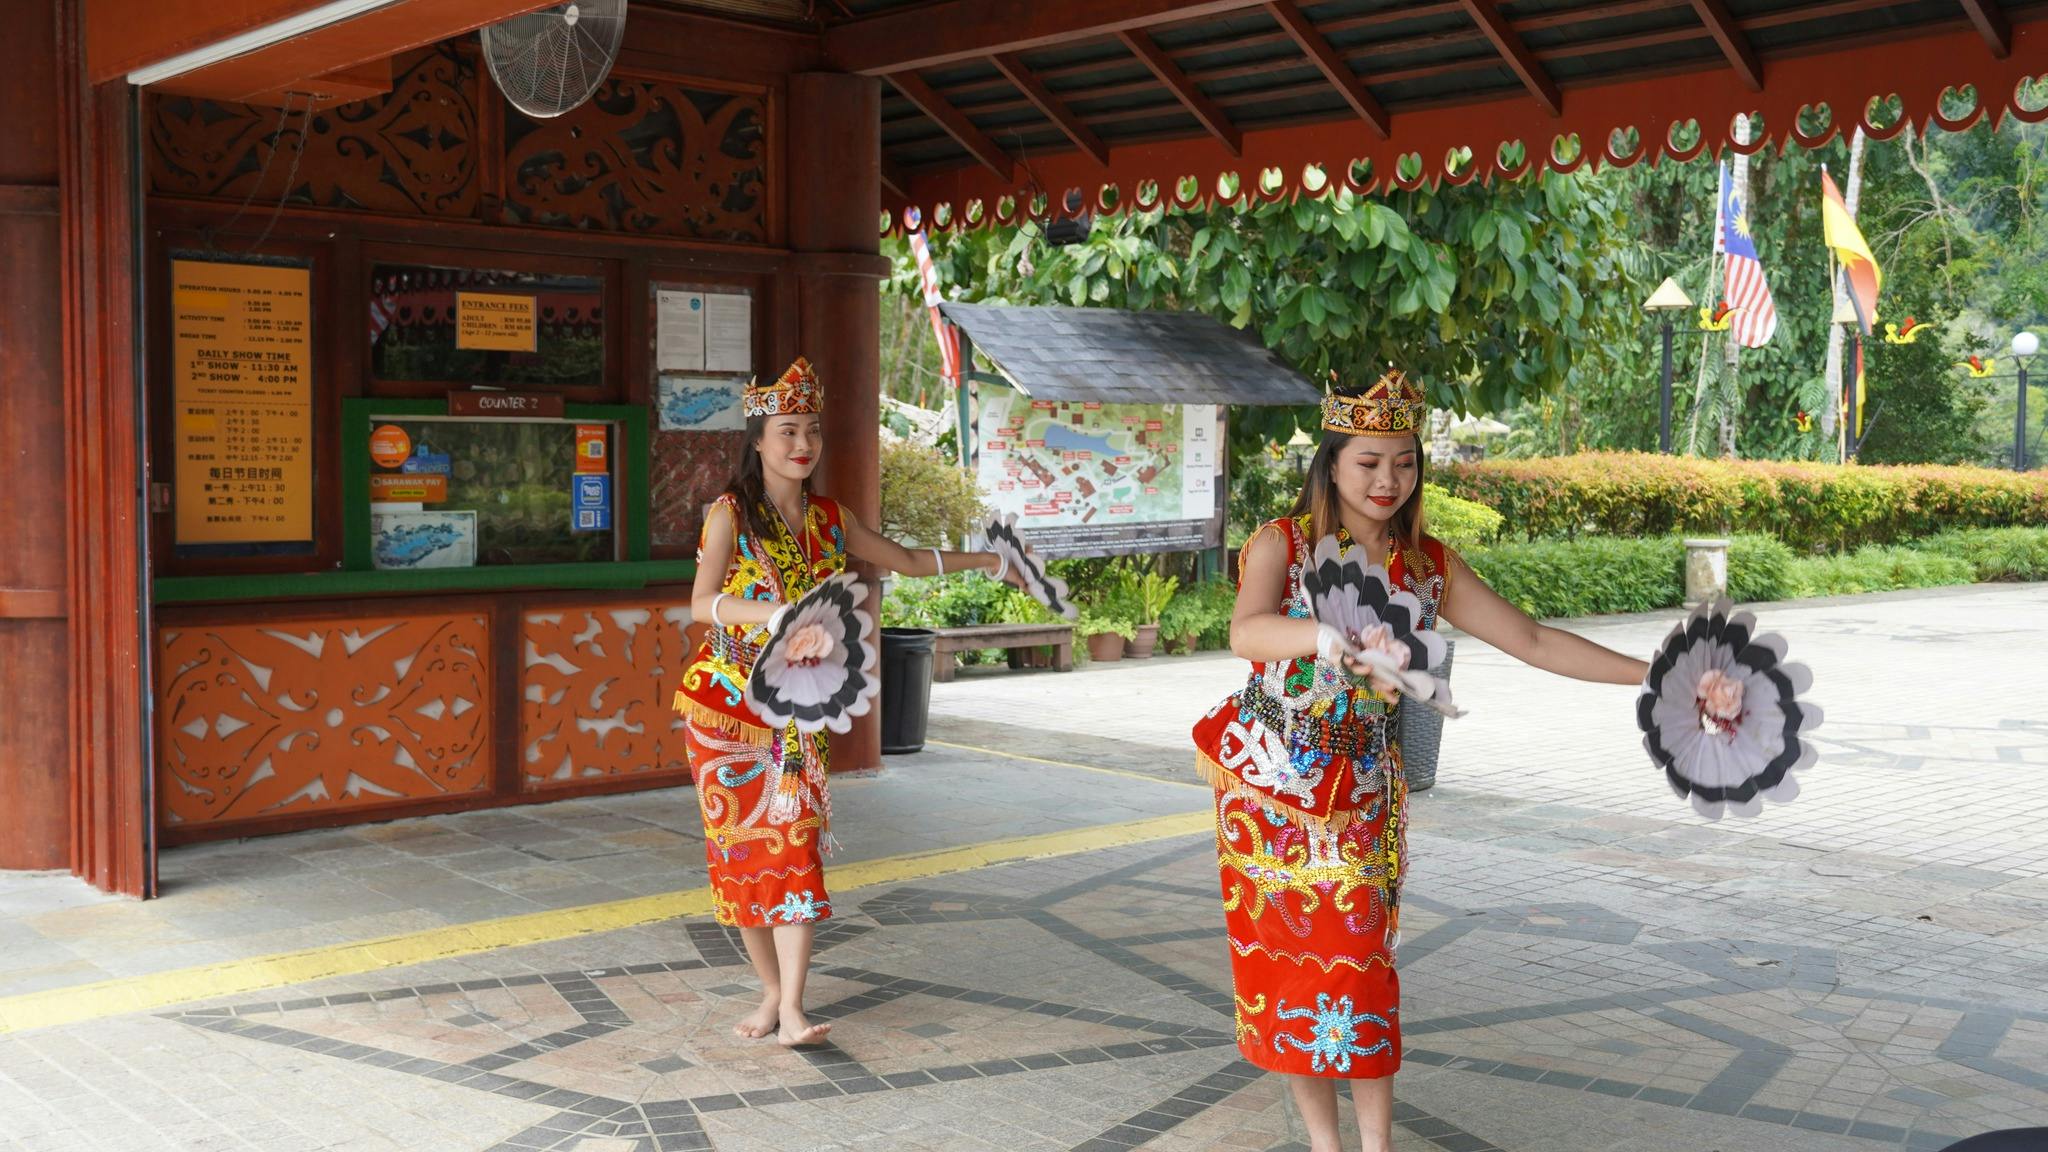 Kampung Budaya Sarawak